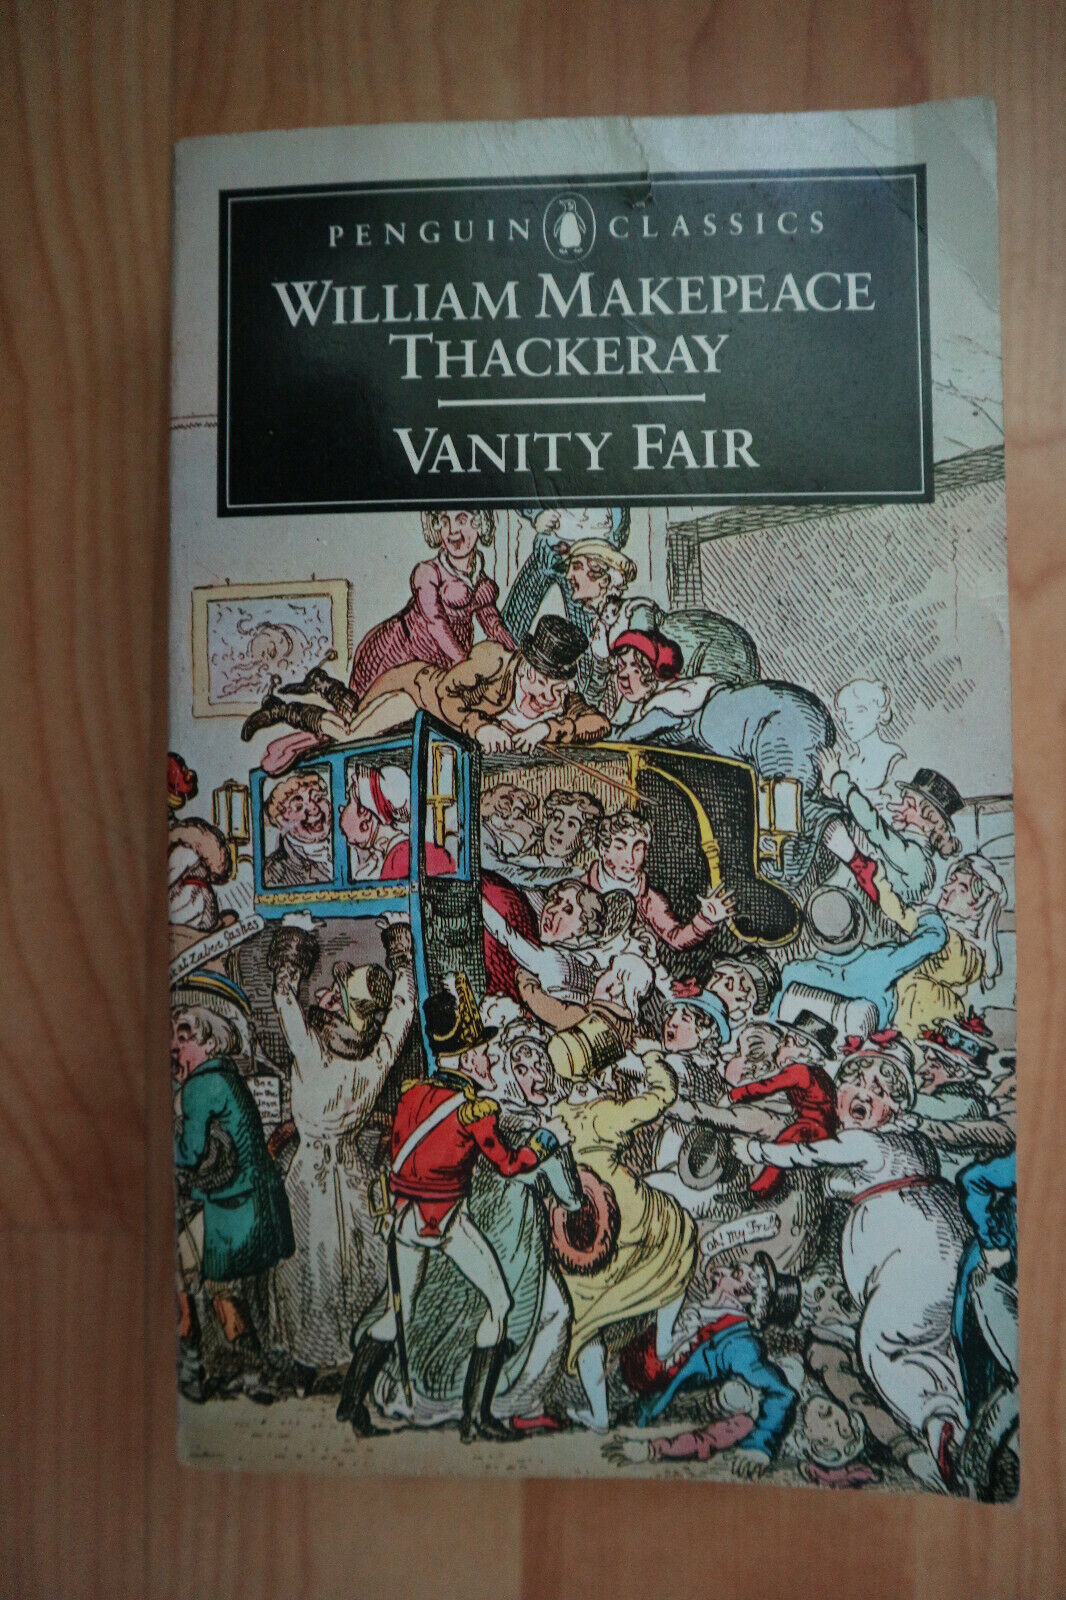 Vanity Fair von William Thackeray auf Englisch Penguin Classics Taschenbuch